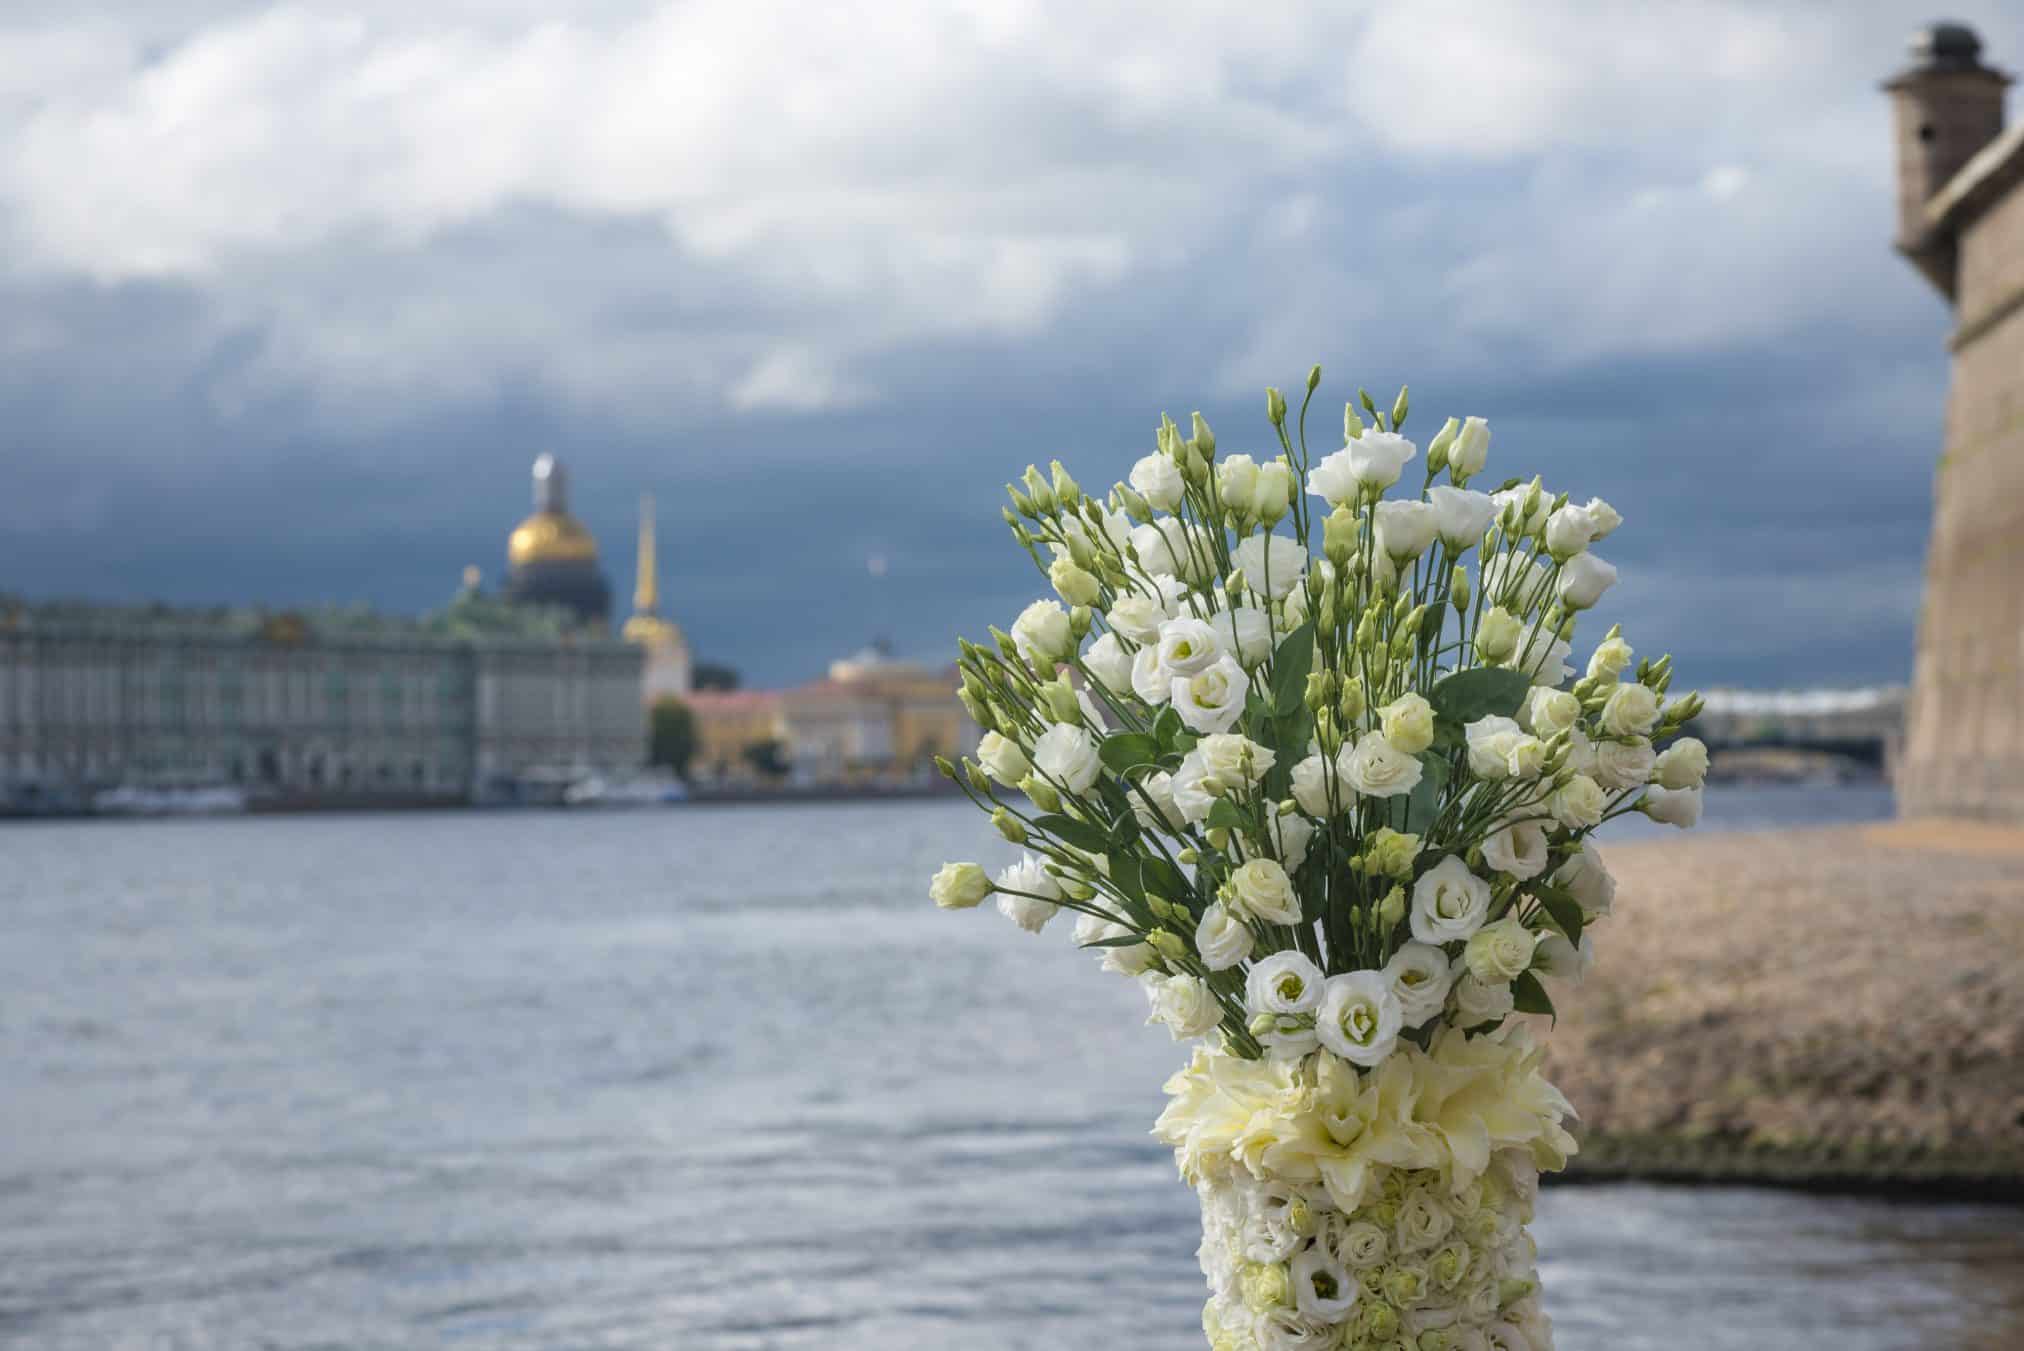 Lisianthus-Eustoma-Flower-Arrangement-Bouquet-White-Green-Decoration-St. Petersburg-Building